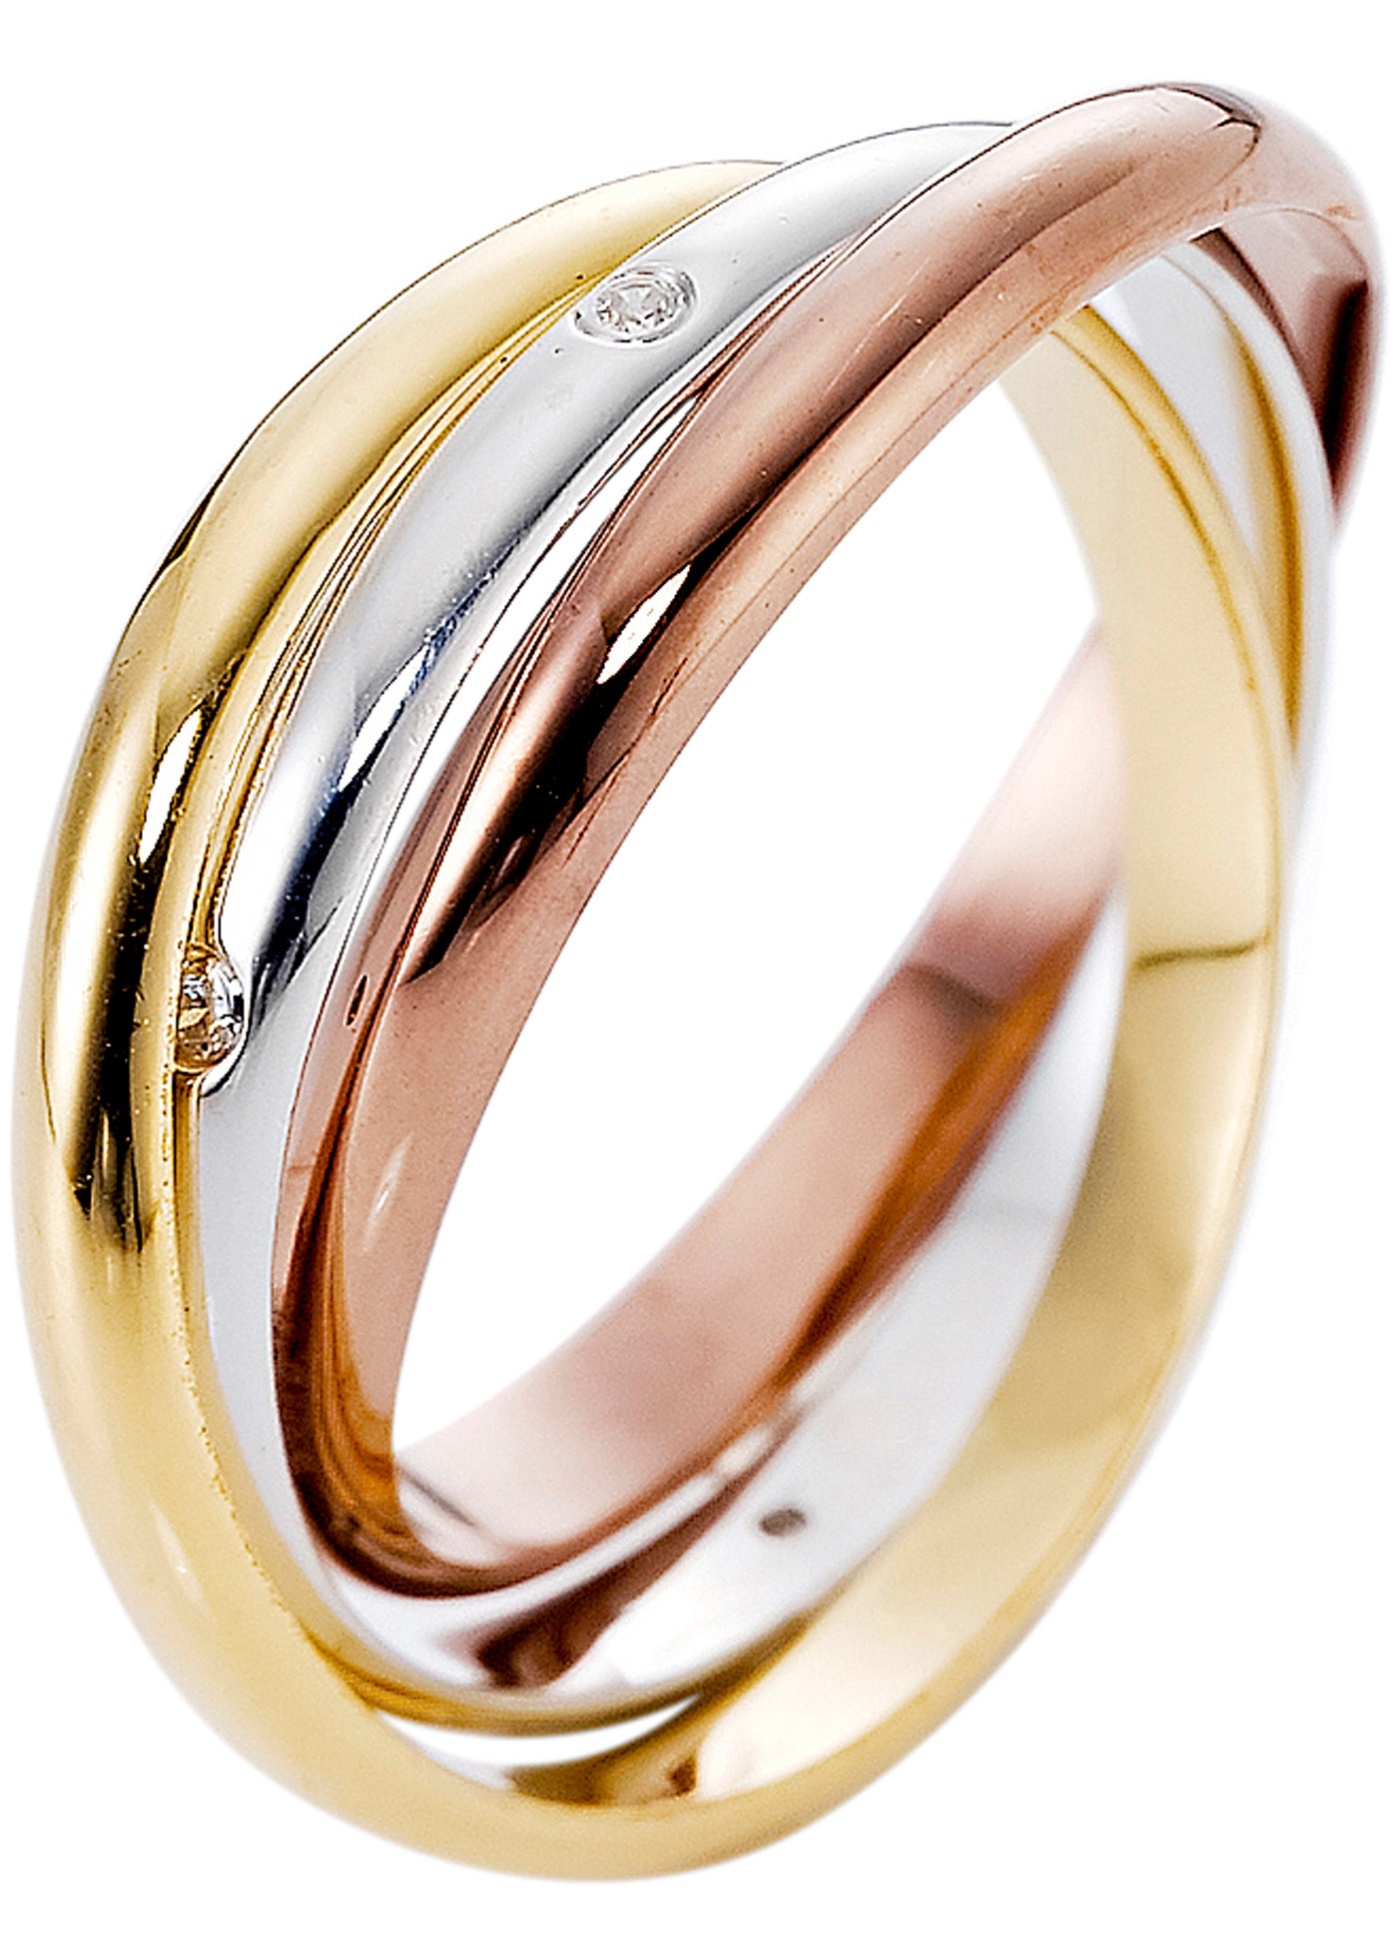 Alle guten Dinge sind drei: Der 3-reihige Ring präsentiert sich im klassisch-modernen Look. Das Schmuckstück besteht aus drei ineinander geschlungenen Ringen. Eleganz erhält das Trio durch die sechs eingefassten Zirkonia-Steinchen, die einen der drei Ringe zieren. Farblich geschmackvoll aufeinander abgestimmt ist der 3-reihige Ring toll zu diversen Outfits und anderen Schmuckstücken kombinierbar. - 0